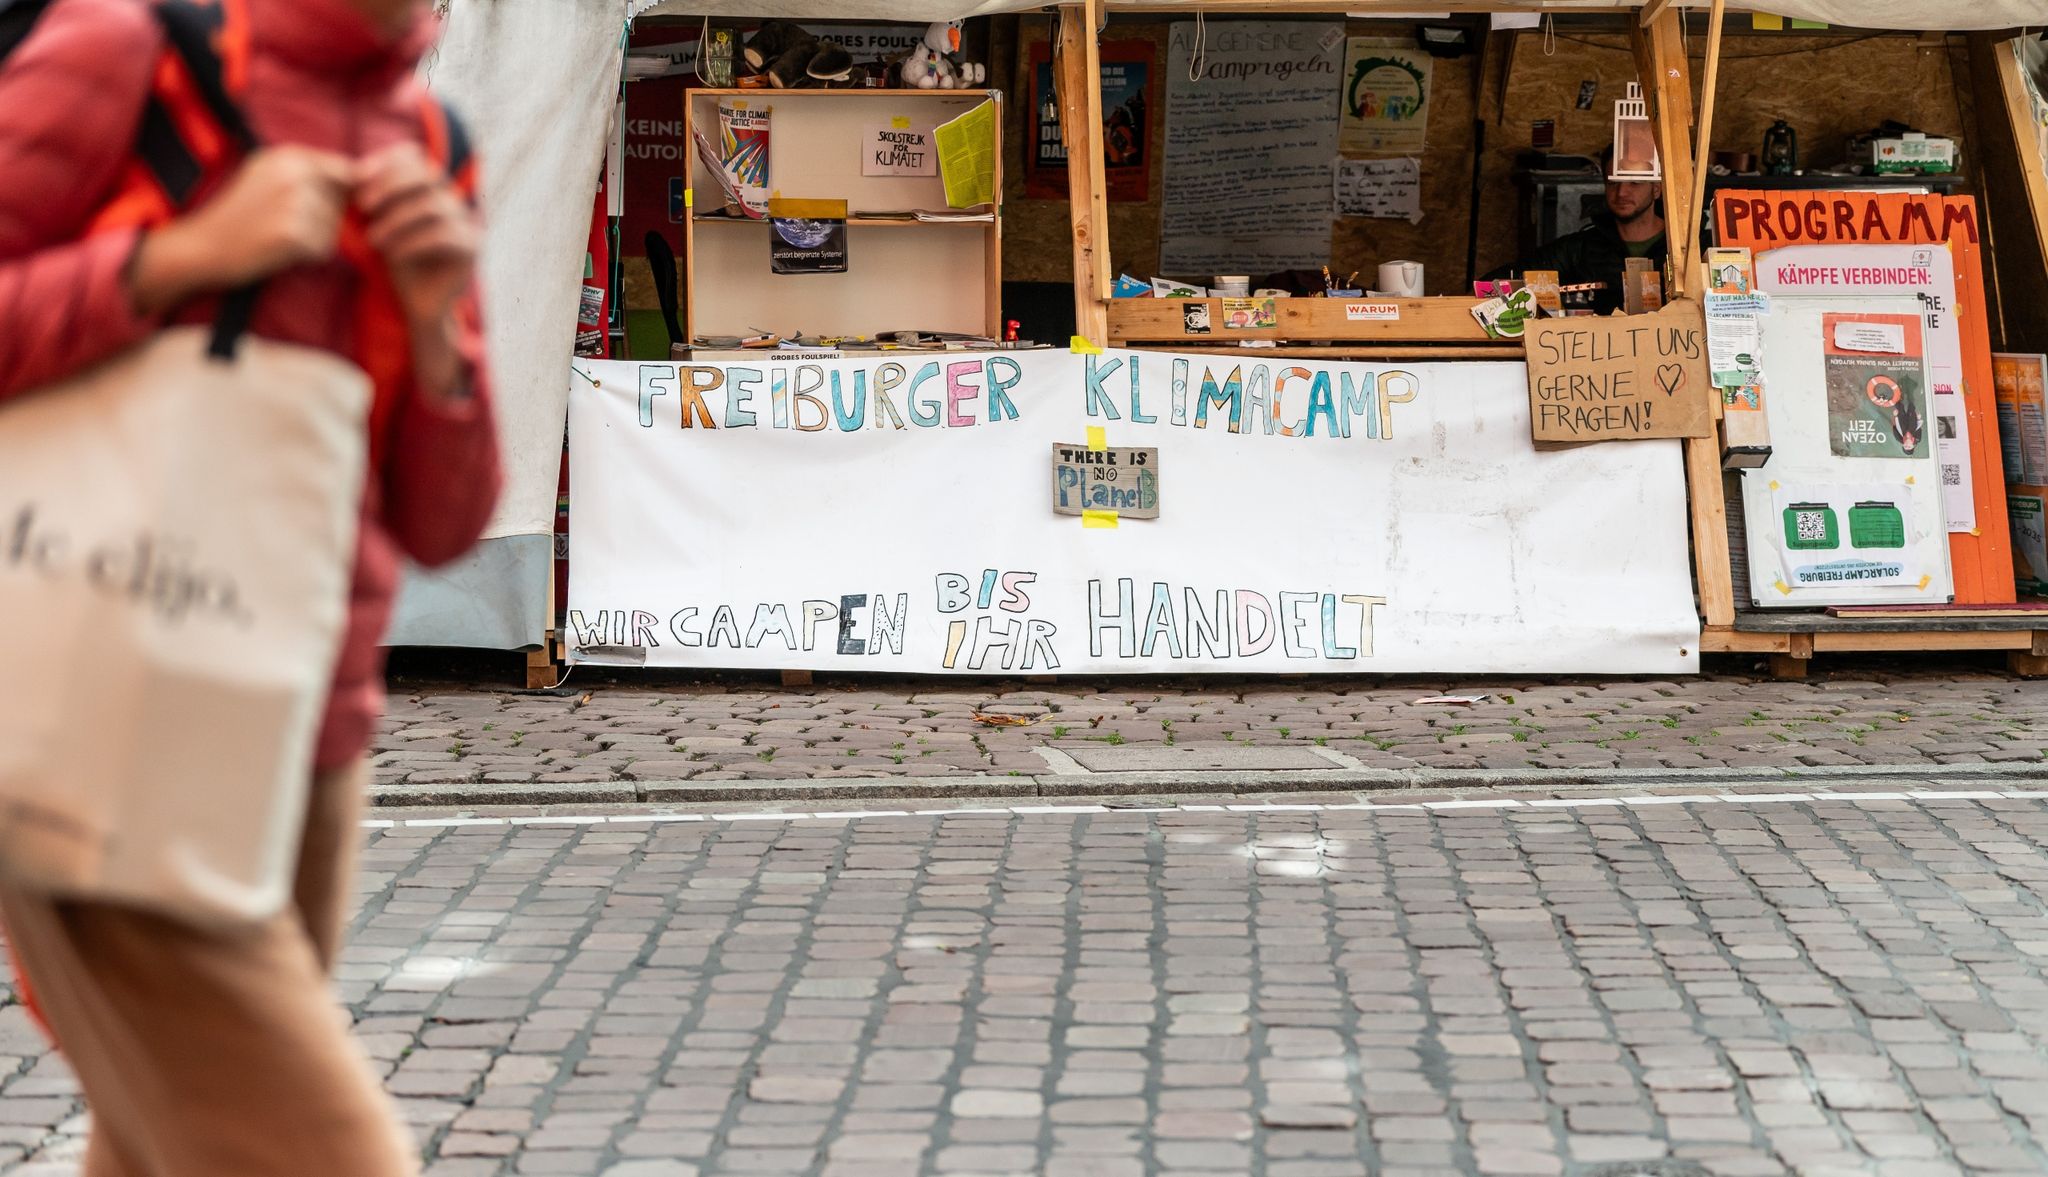 Das Freiburger Klimacamp auf dem Rathausplatz soll nach dem Willen der Stadt schrumpfen und dem Weihnachtsmarkt im Advent sogar vollständig Platz machen.